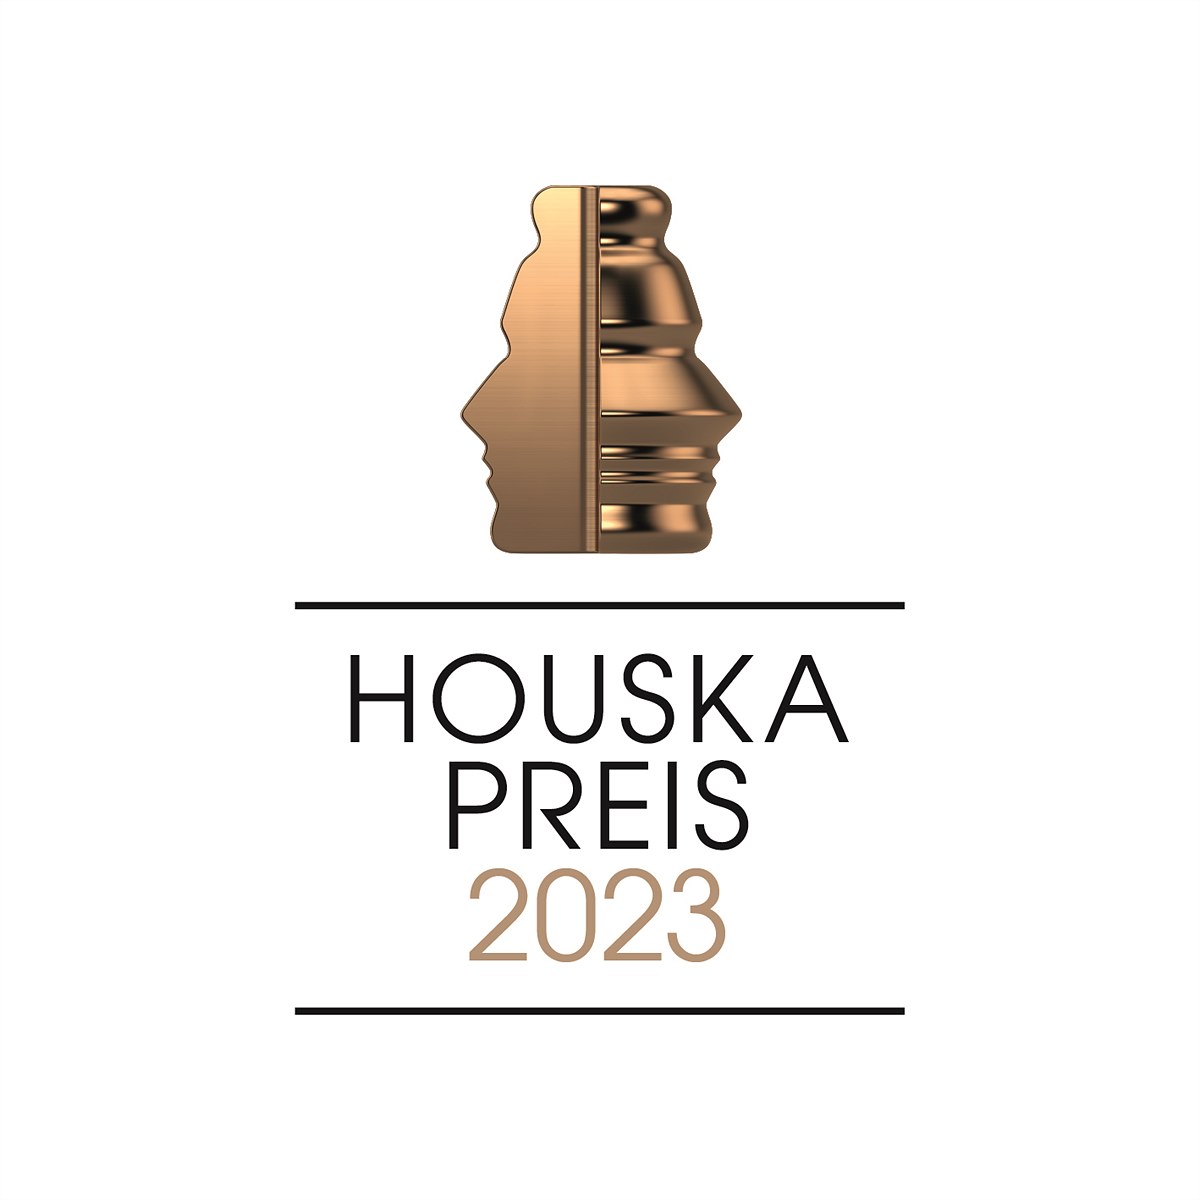 Logo Houskapreis